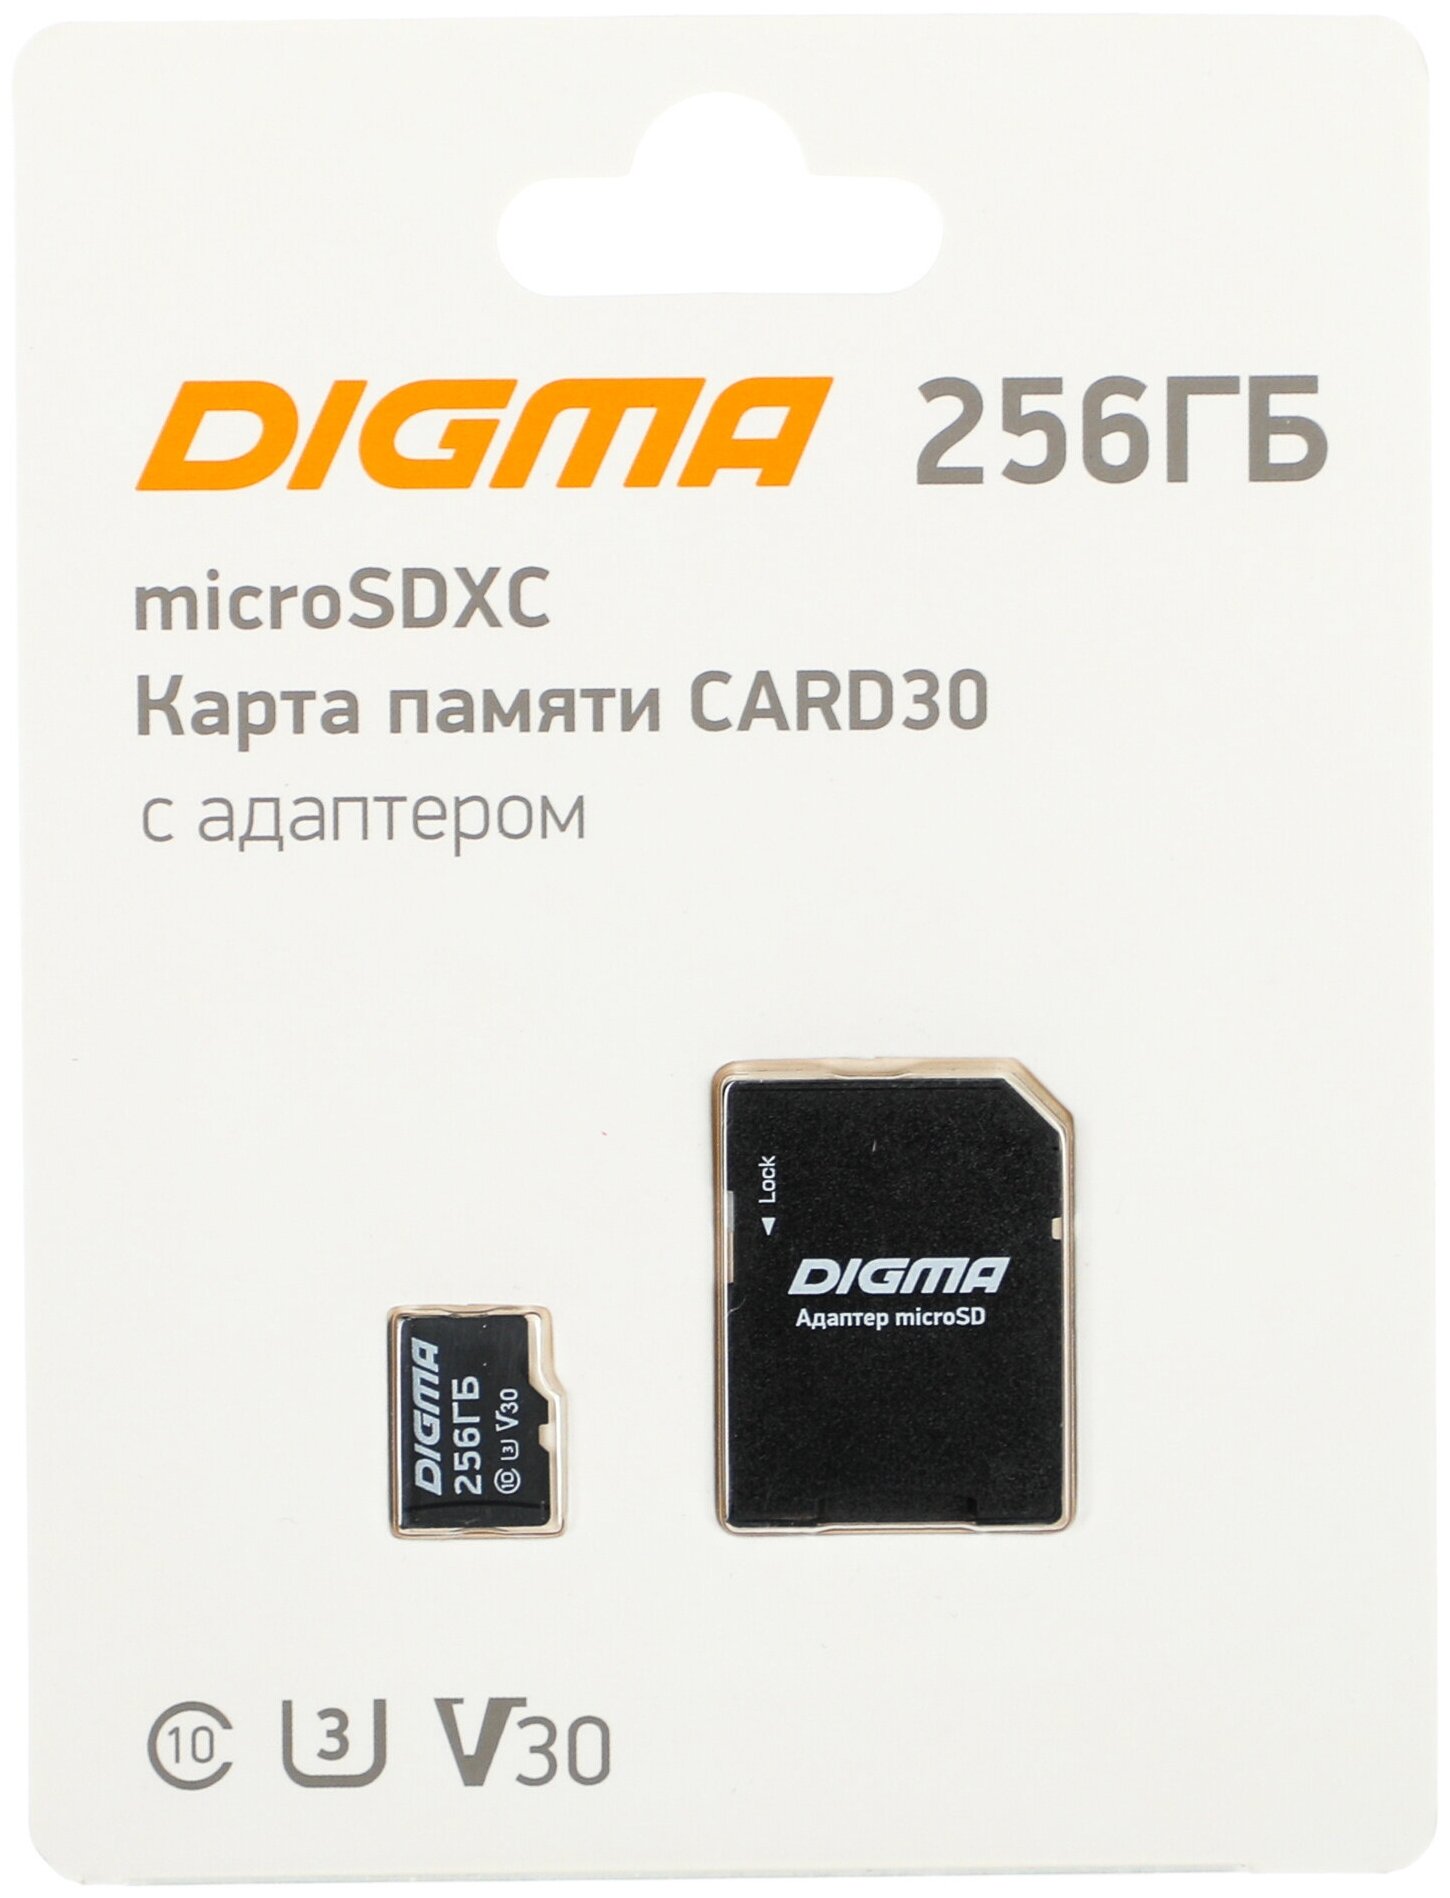 Карта памяти 256Gb - Digma MicroSDXC Class 10 Card30 DGFCA256A03 с переходником под SD (Оригинальная!)